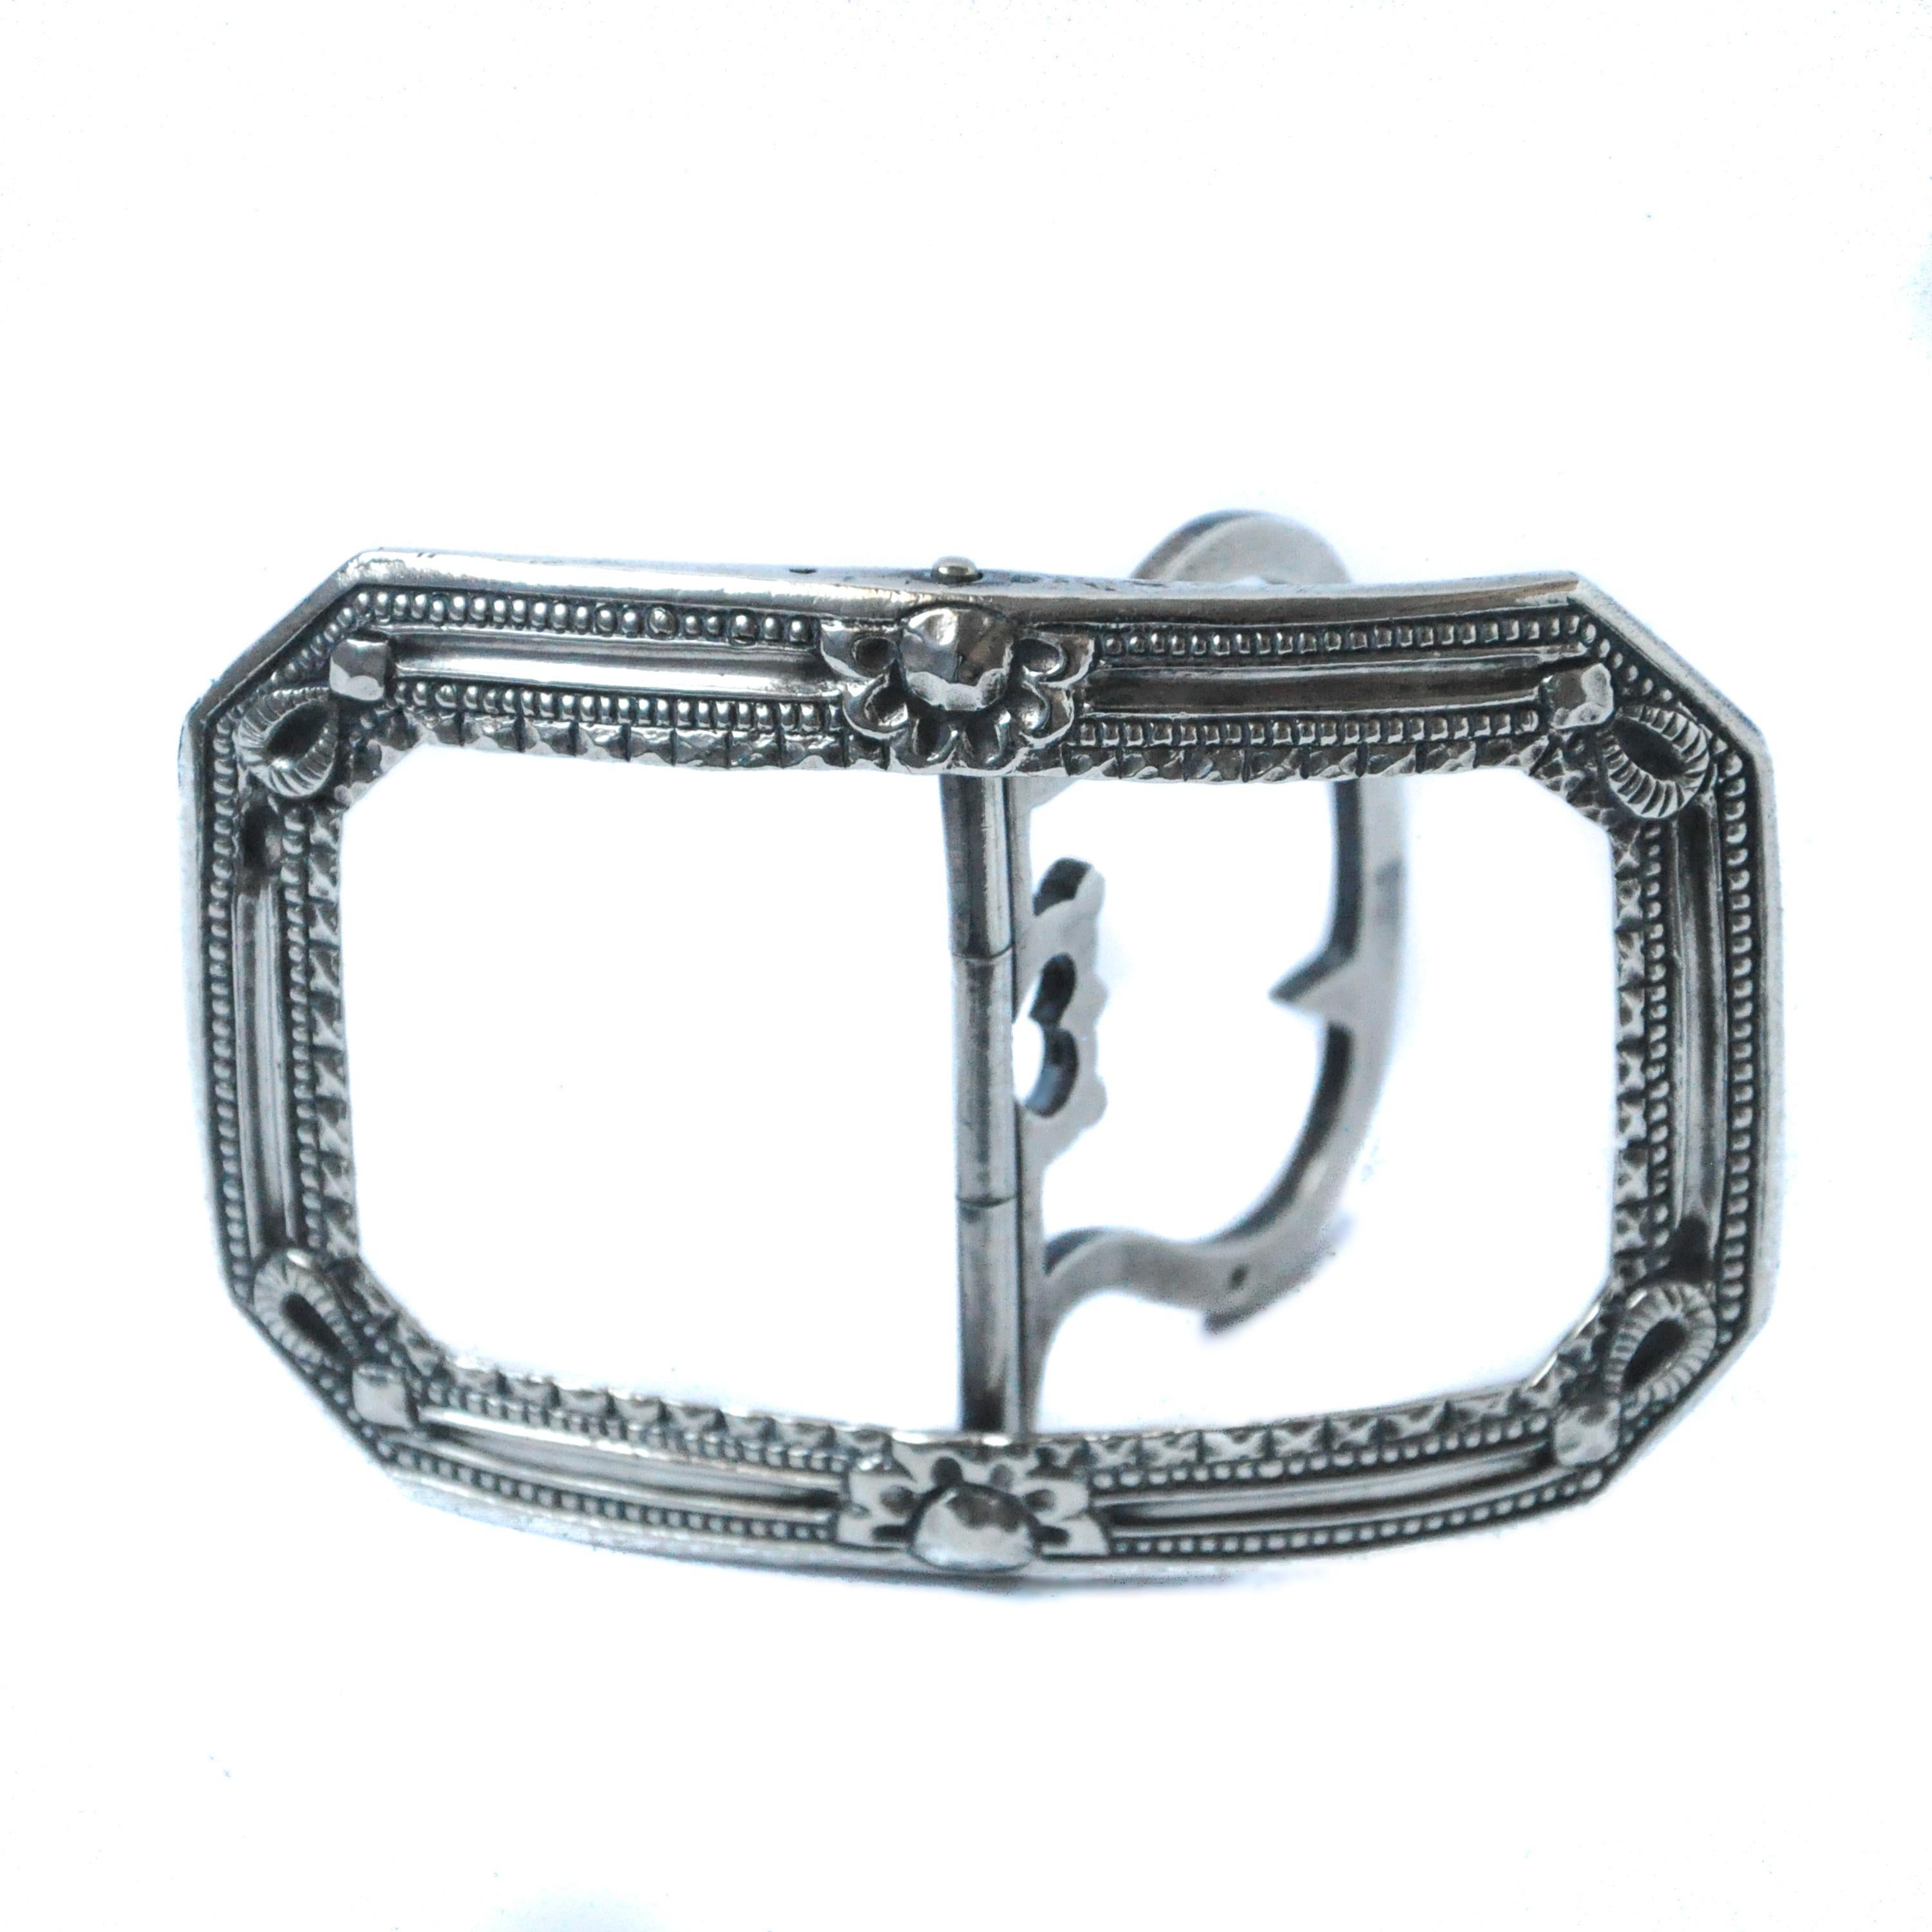 Cette boucle de ceinture rectangulaire incurvée en argent a été fabriquée au début du XIXe siècle, à l'époque géorgienne. Le pilier central est articulé par une charnière à deux branches, flanquée d'un motif ajouré en forme de cœur. En outre, deux